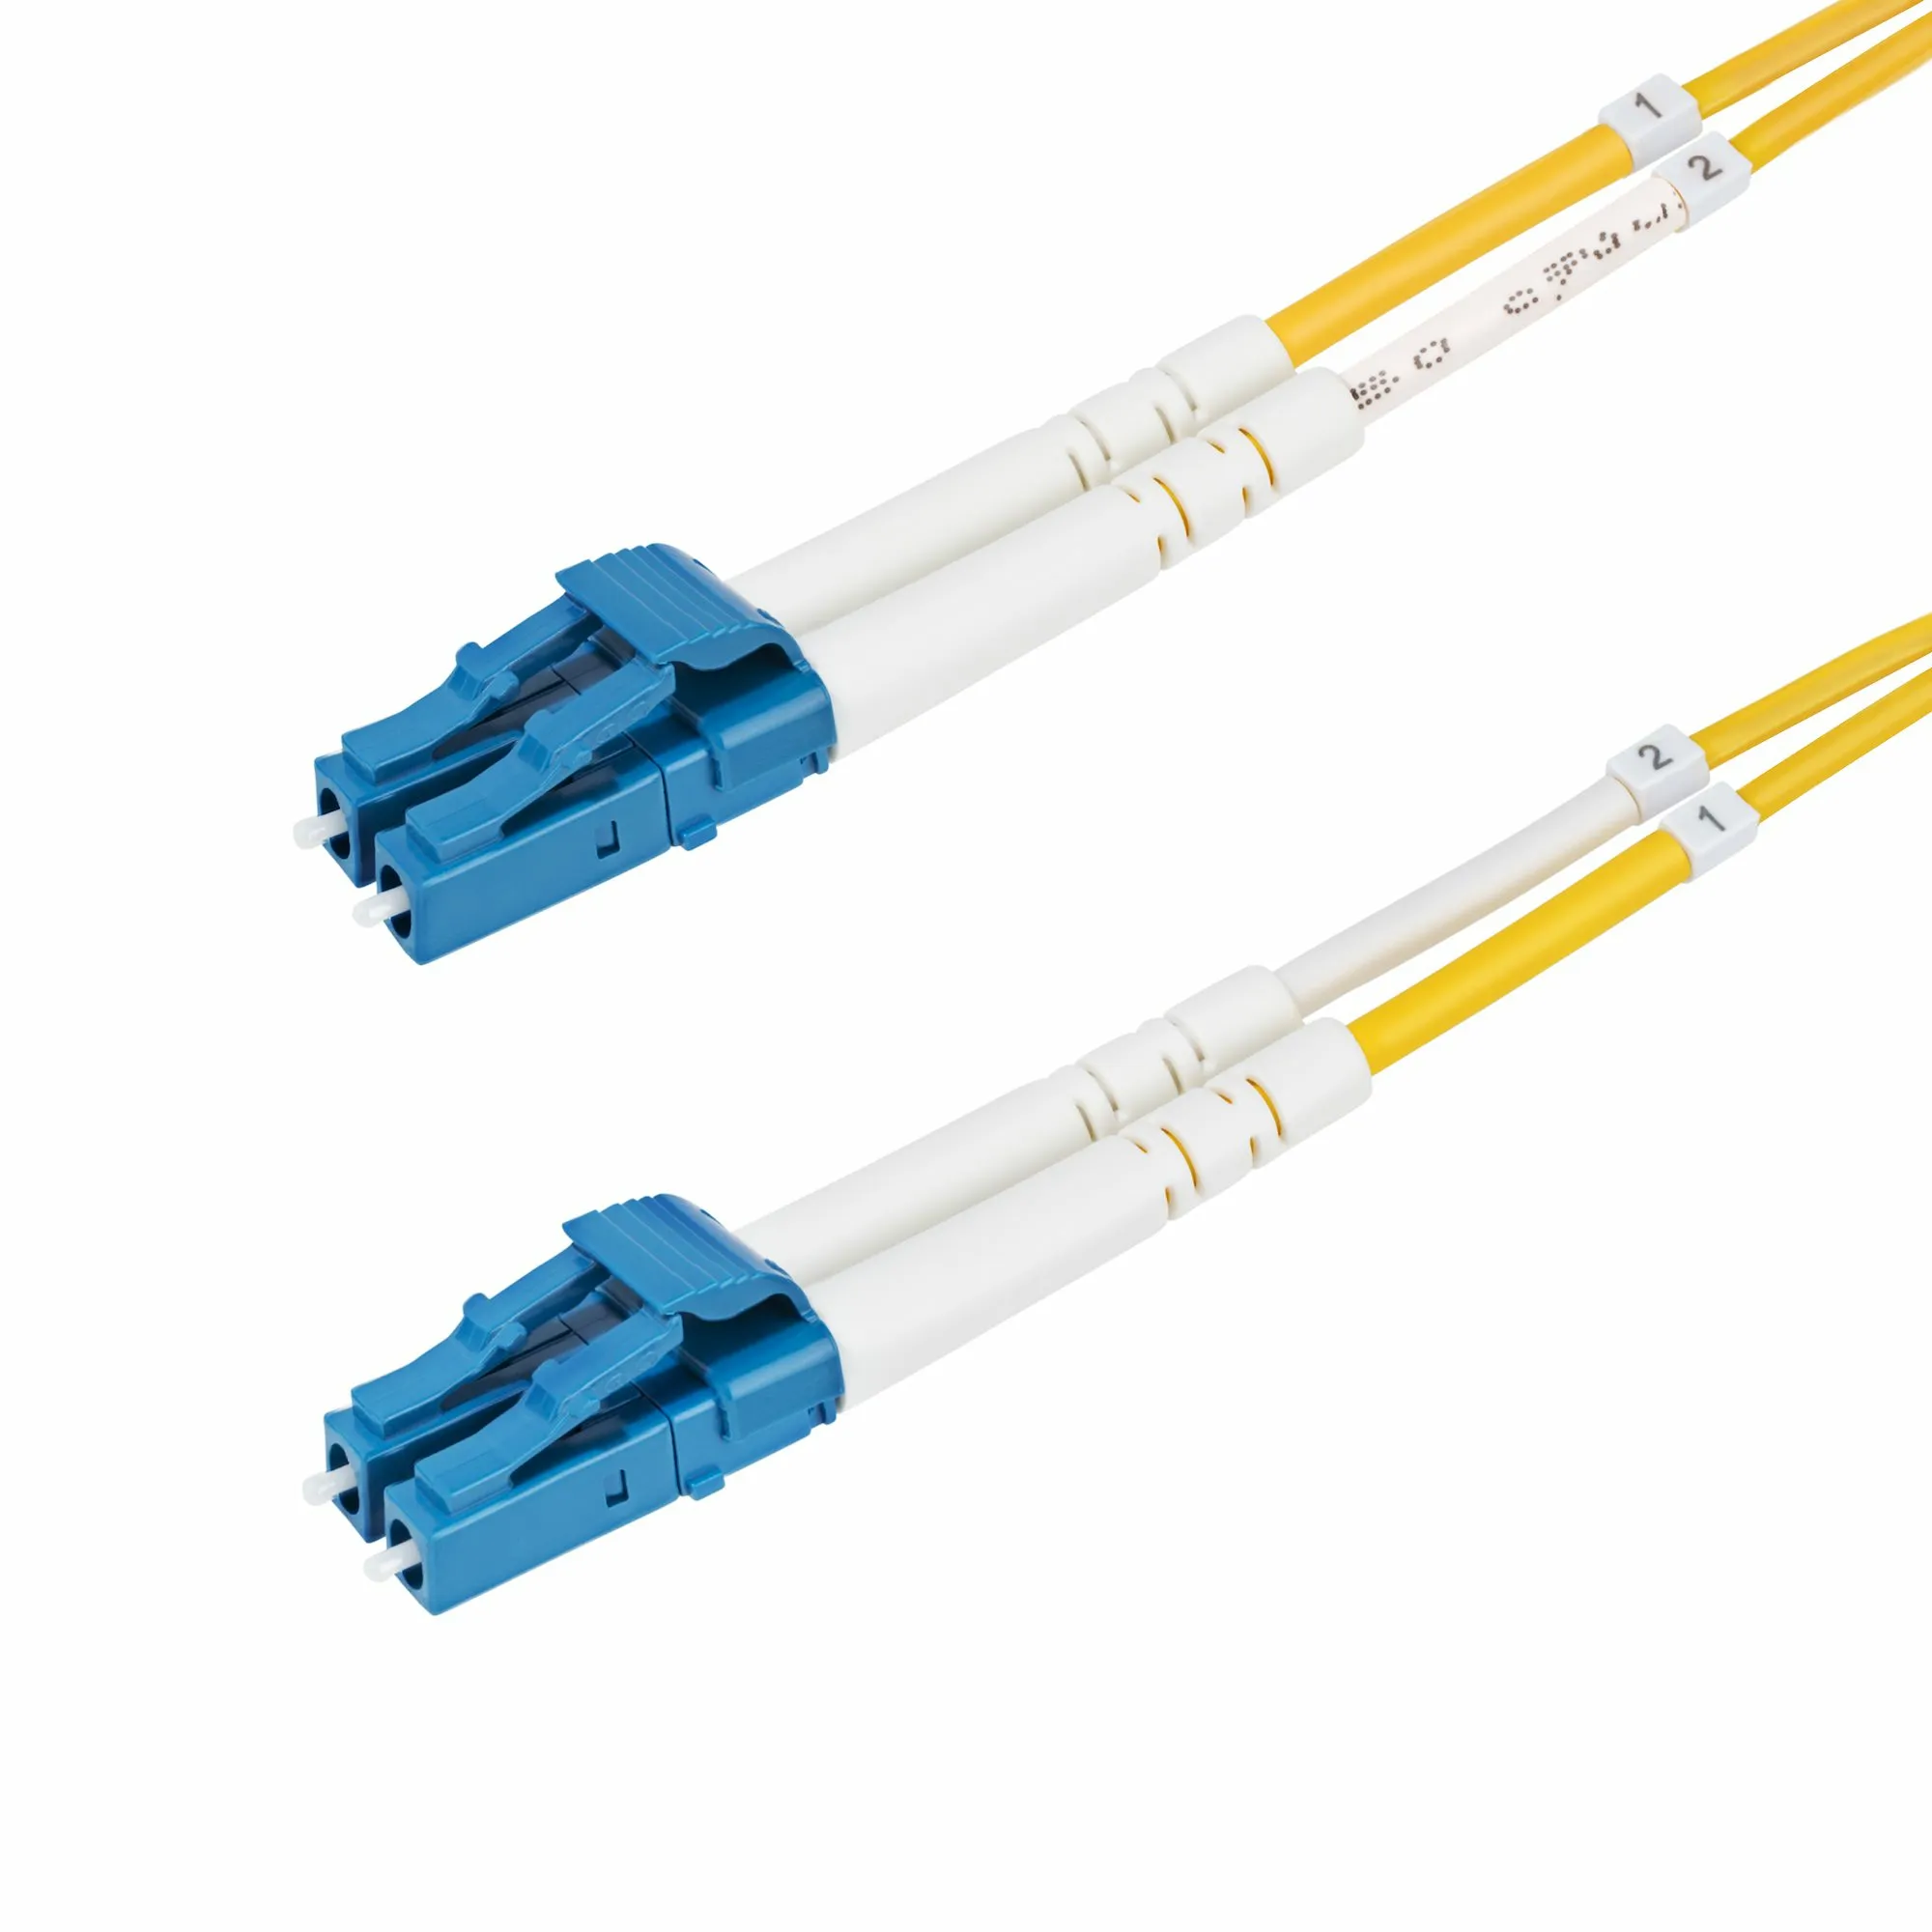 Achat StarTech.com Câble Fibre Optique de 40m Duplex Monomode au meilleur prix